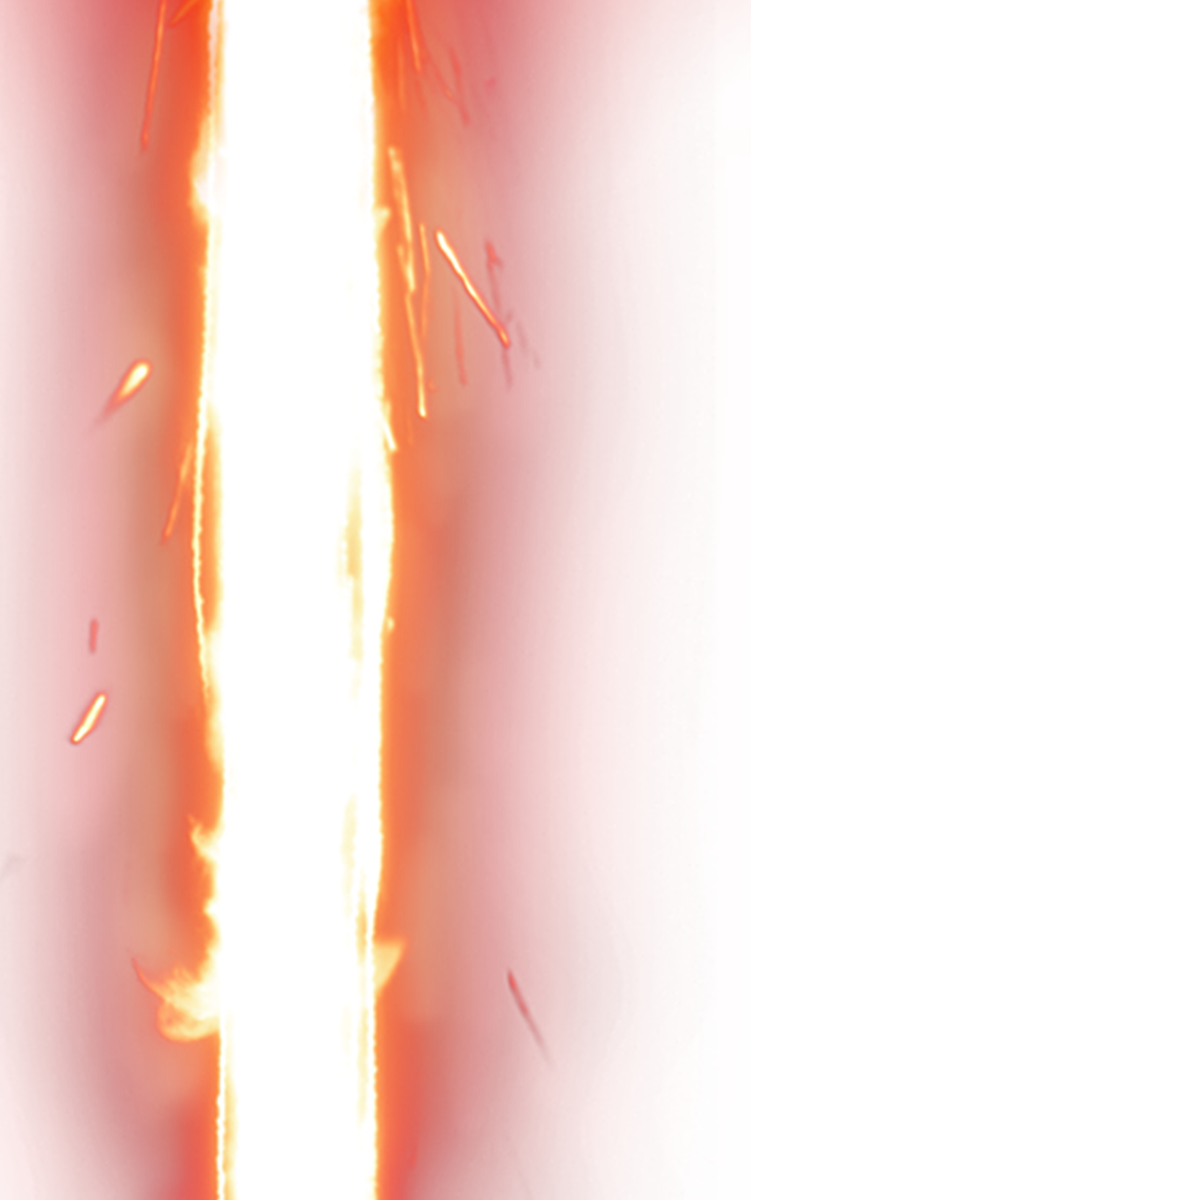 lightsaber clipart transparent background